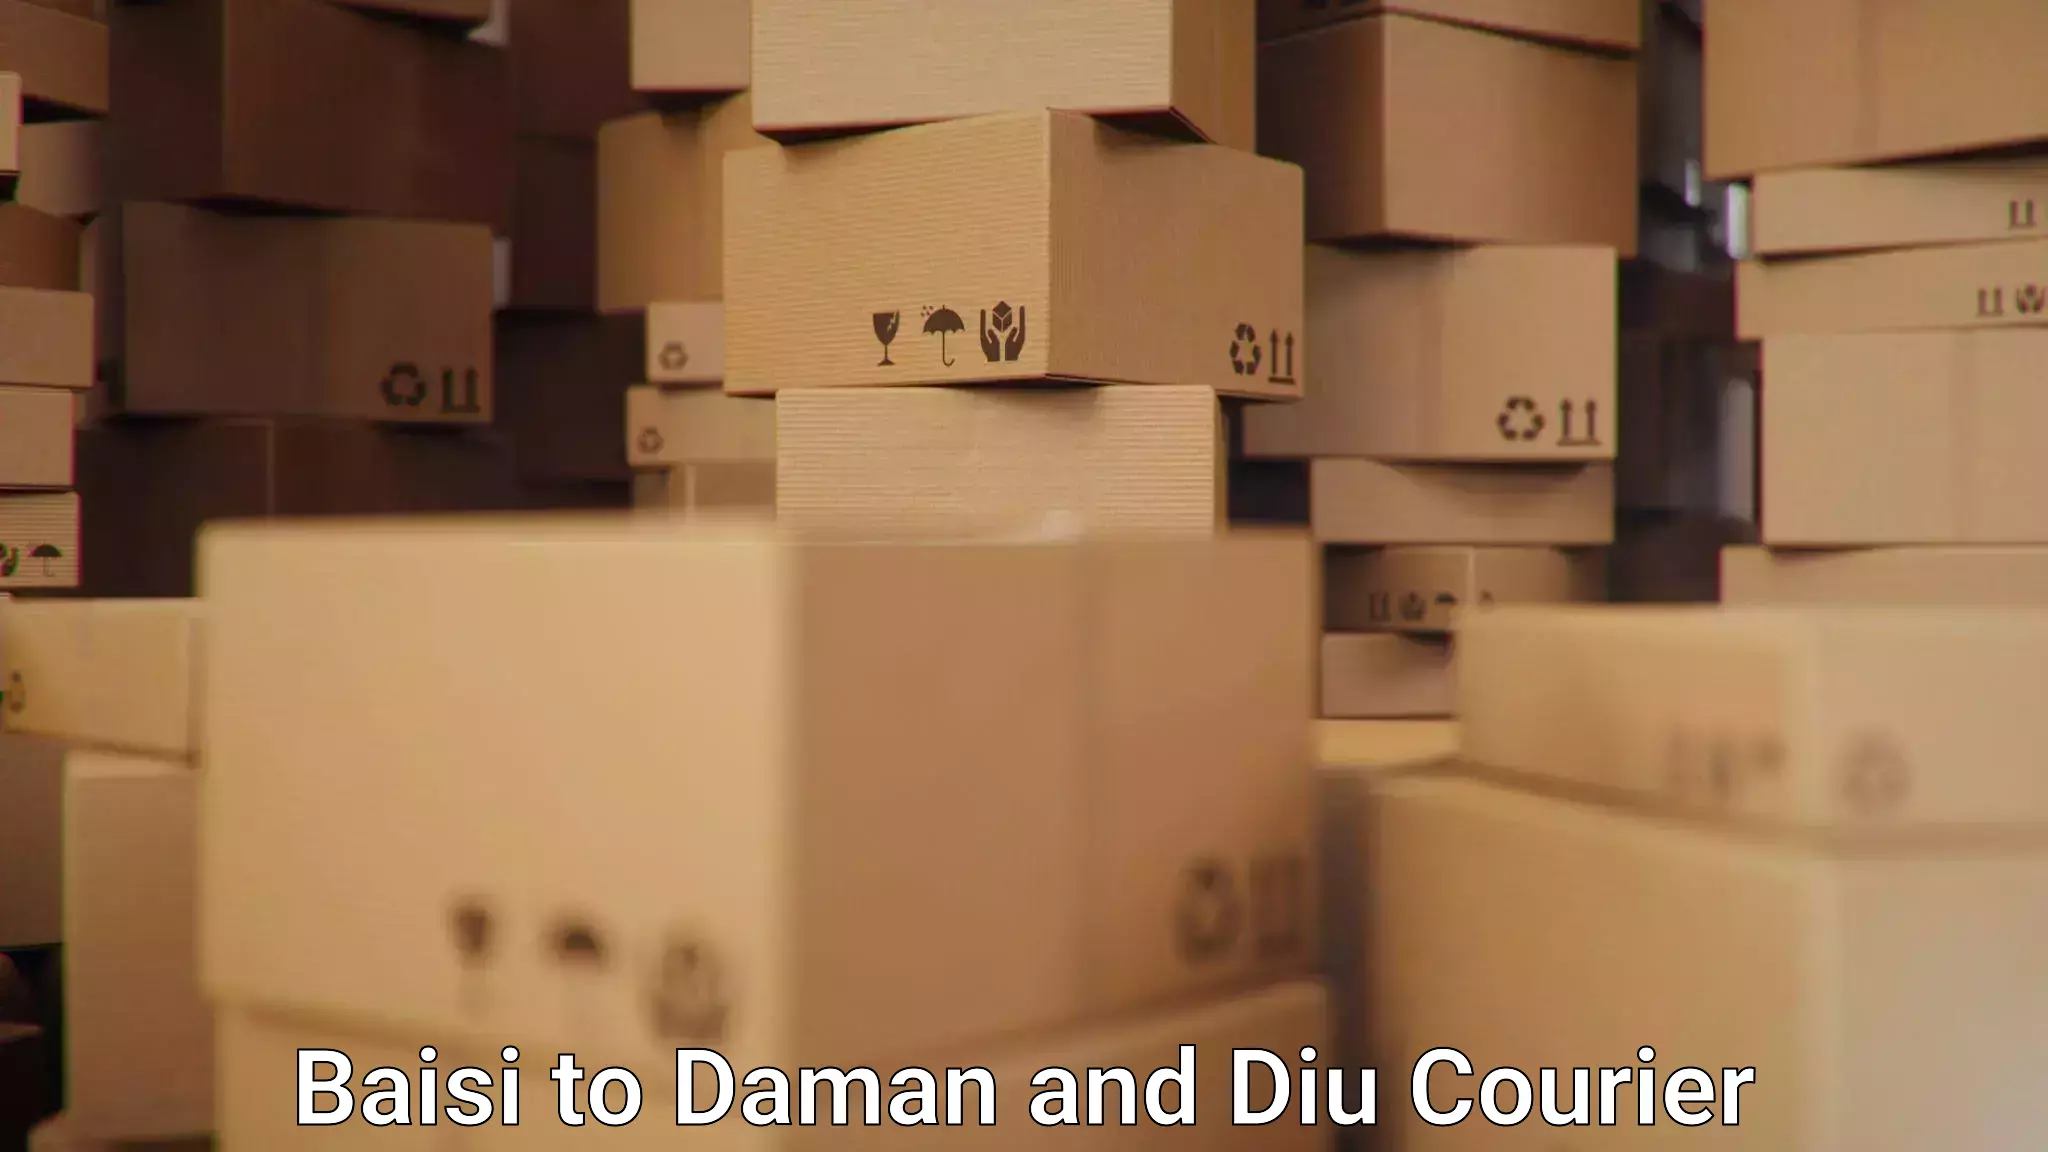 Courier service partnerships Baisi to Daman and Diu